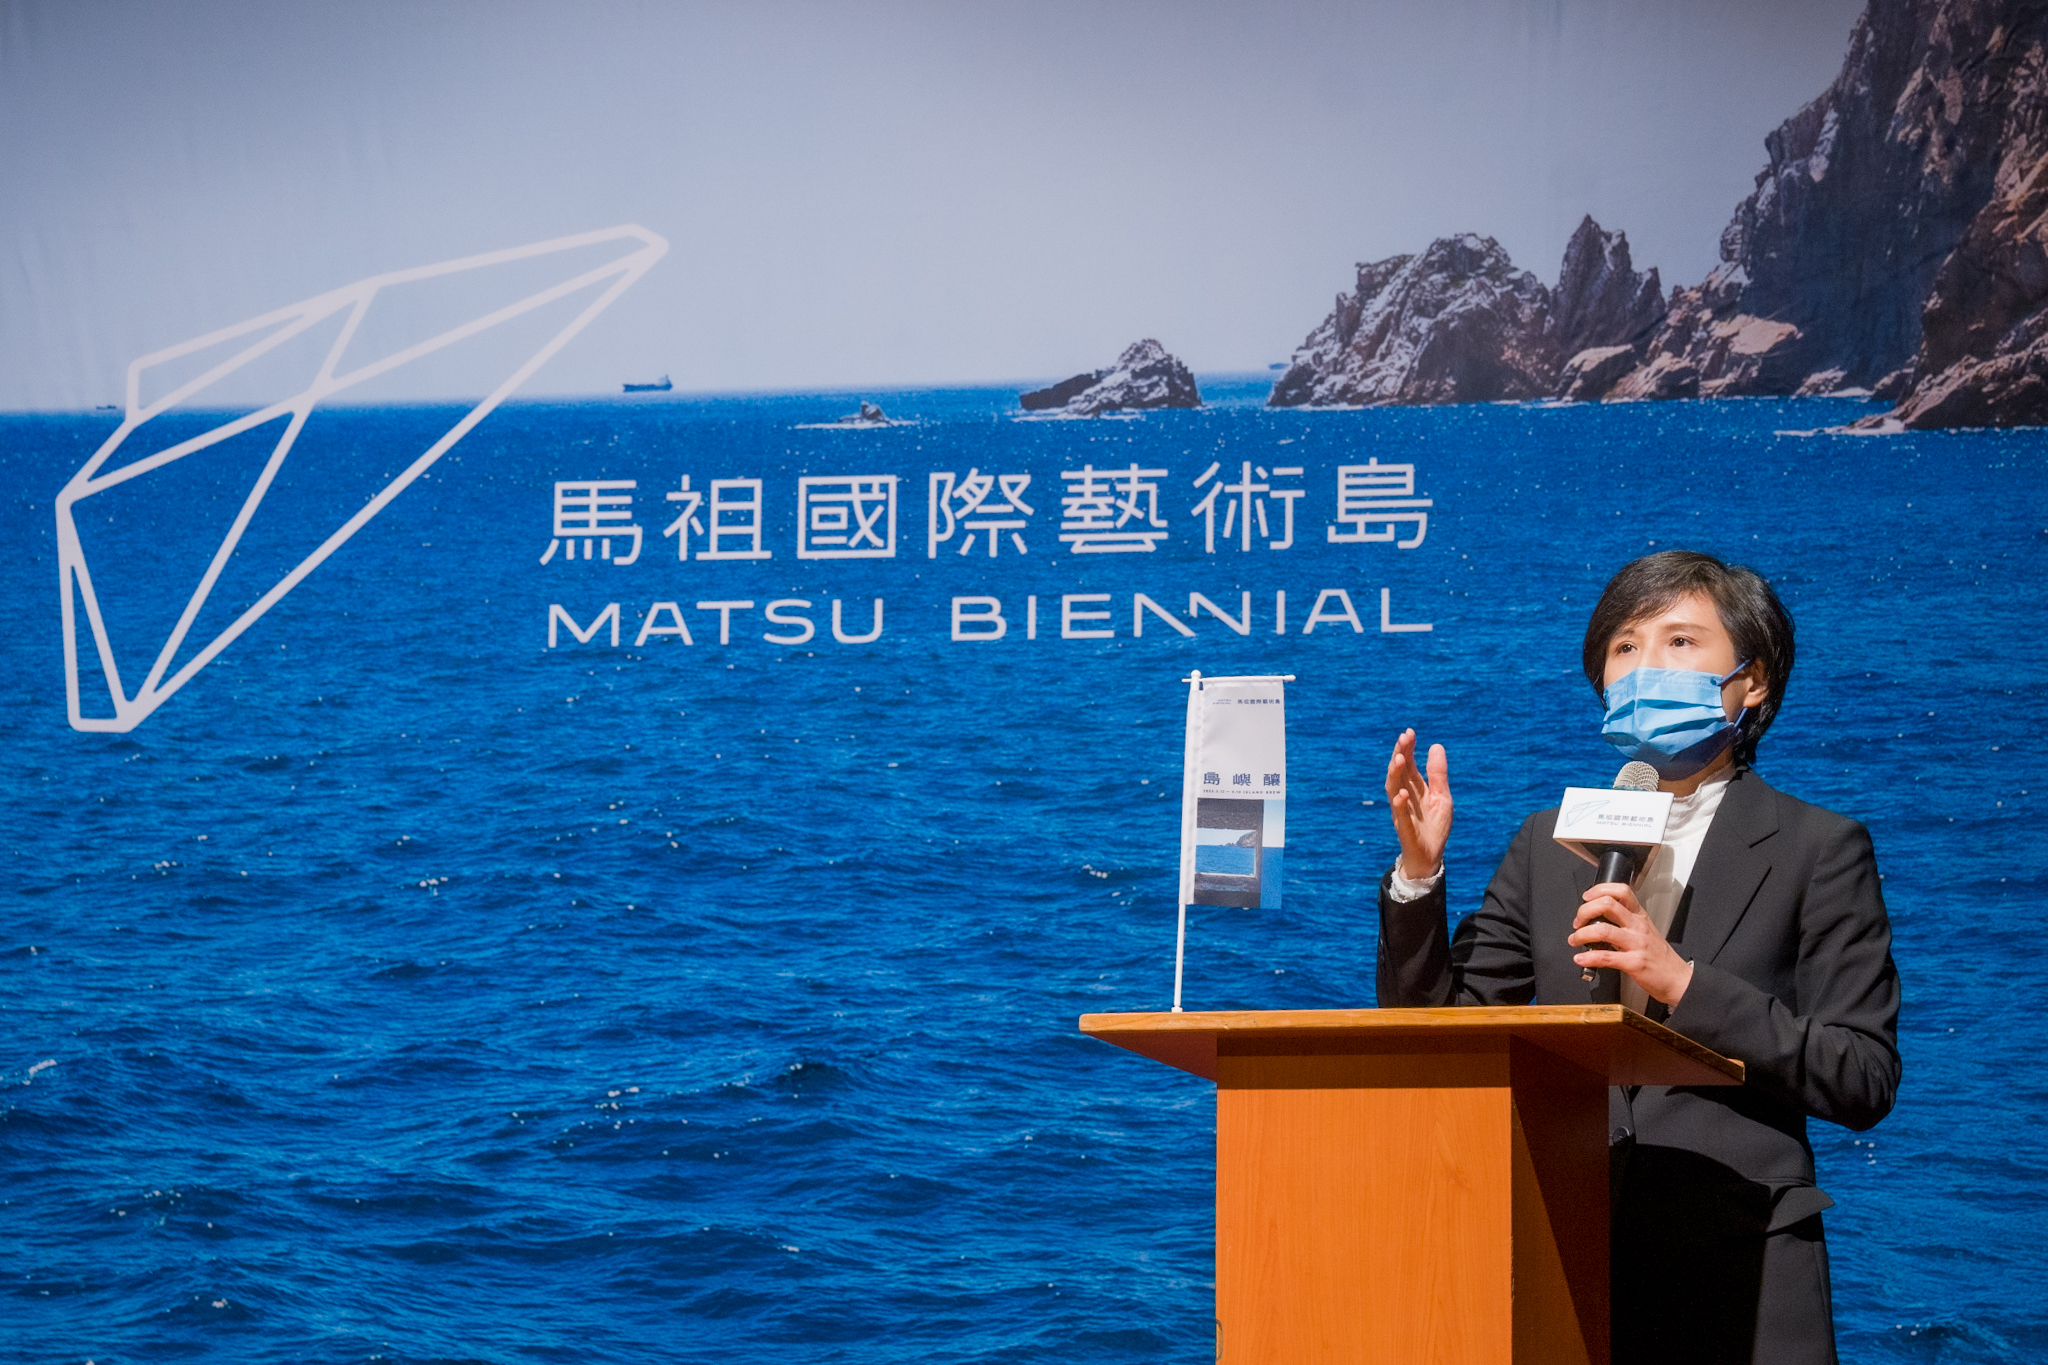 Zheng Lijun (鄭麗君), wakil presiden Federasi Kebudayaan, mengatakan bahwa Matsu Biennial adalah warisan dan inovasi, baik lokal maupun internasional, yang memungkinkan semua orang untuk mengenal kembali sosok Matsu. (Sumber: Matsu Biennial)